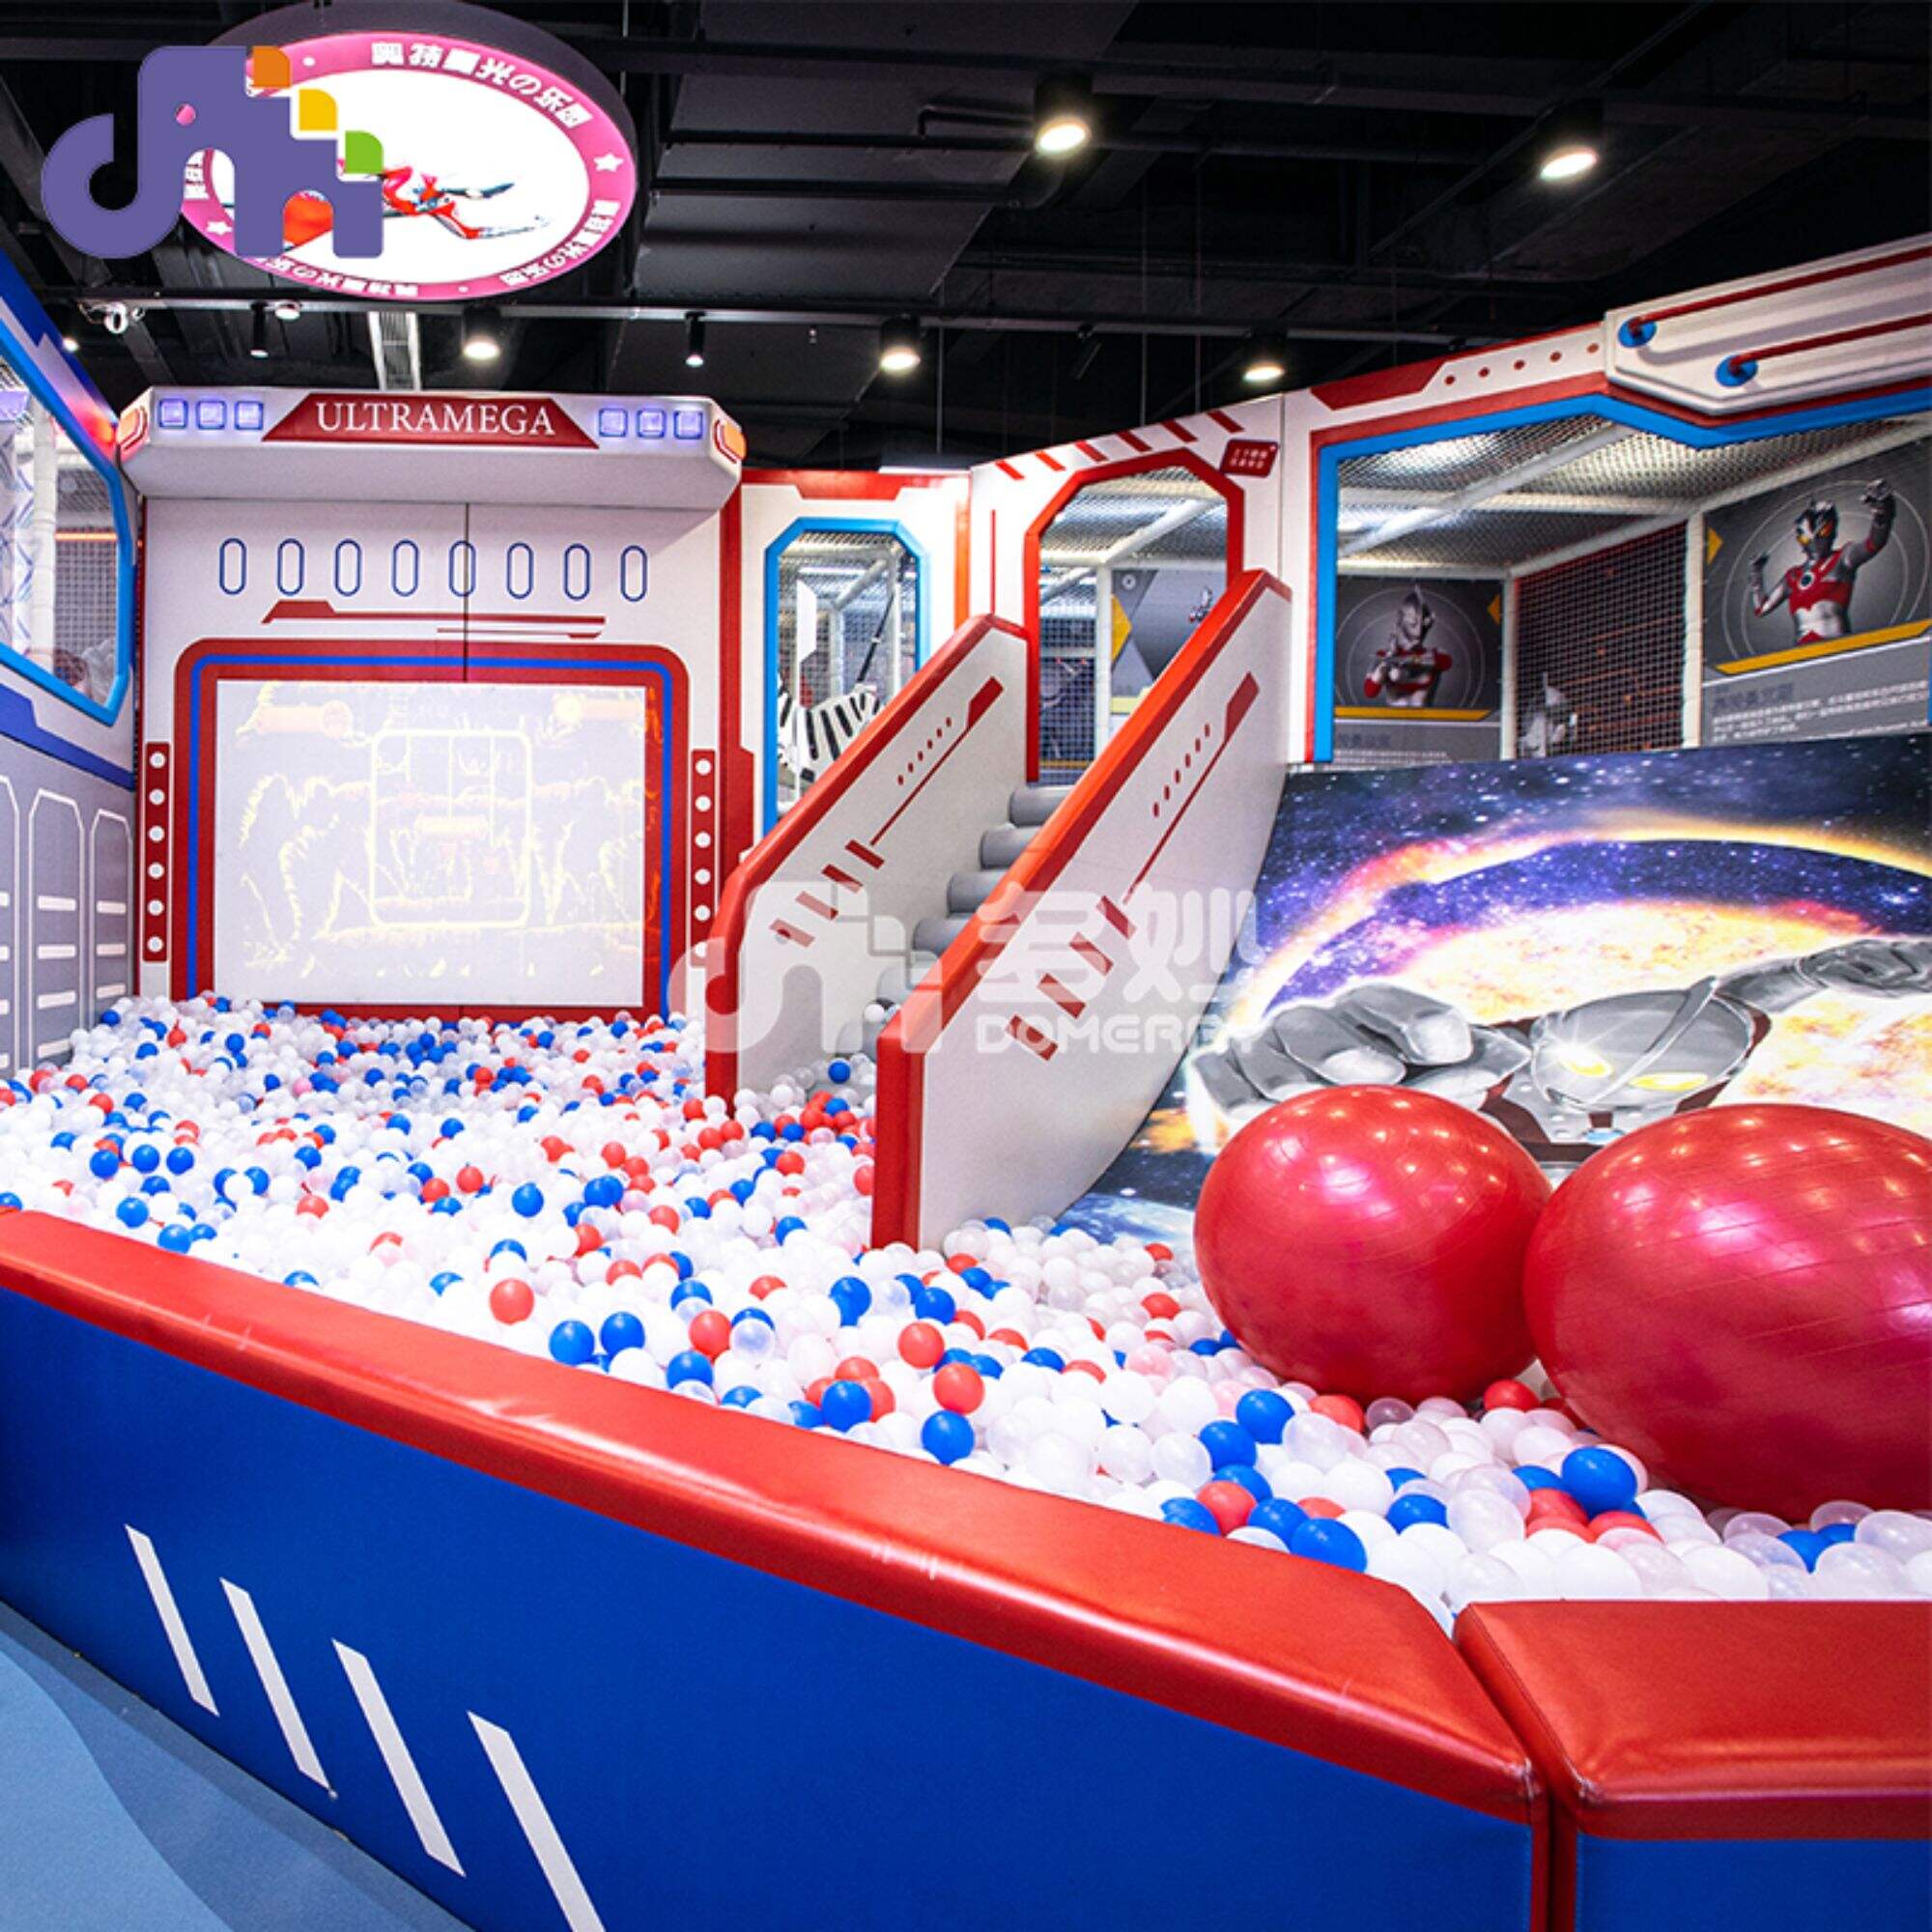 Ultraman themapark IP maatwerk ontwerp zachte speeltoestellen elektrische draaimolen binnenspeeltuin voor kinderen